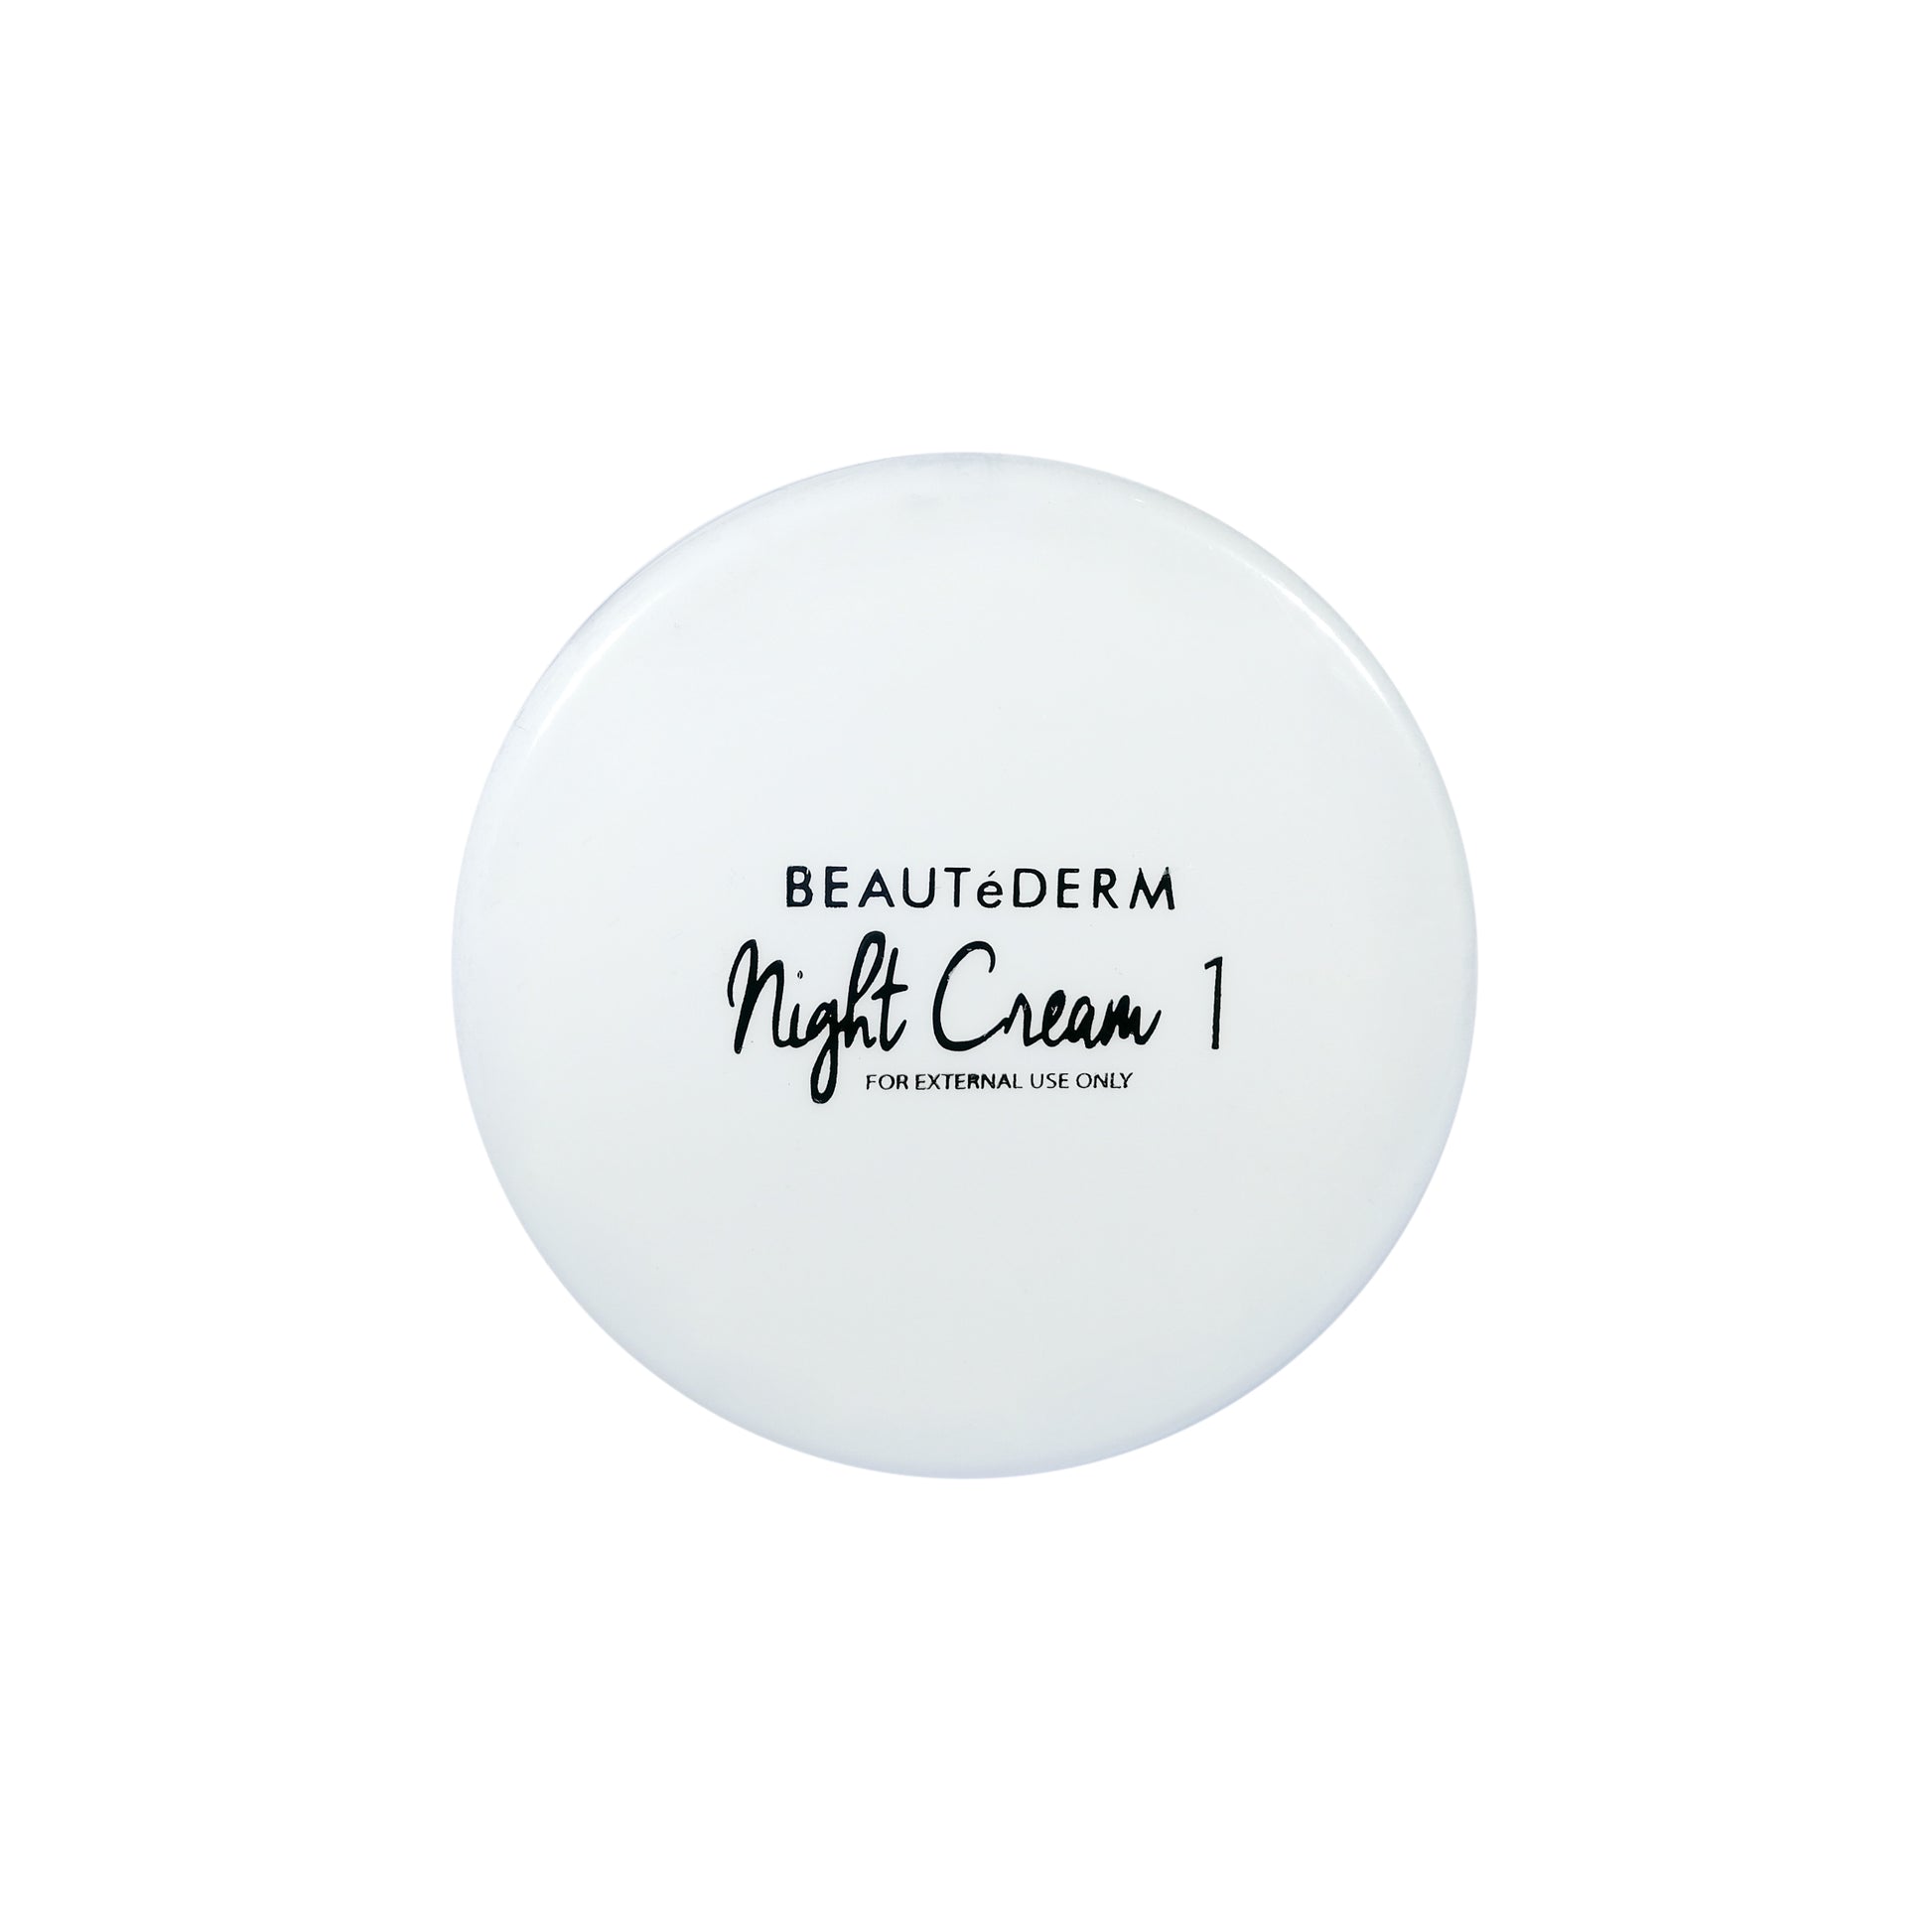 Beautederm Night Cream 1 50g Whitening